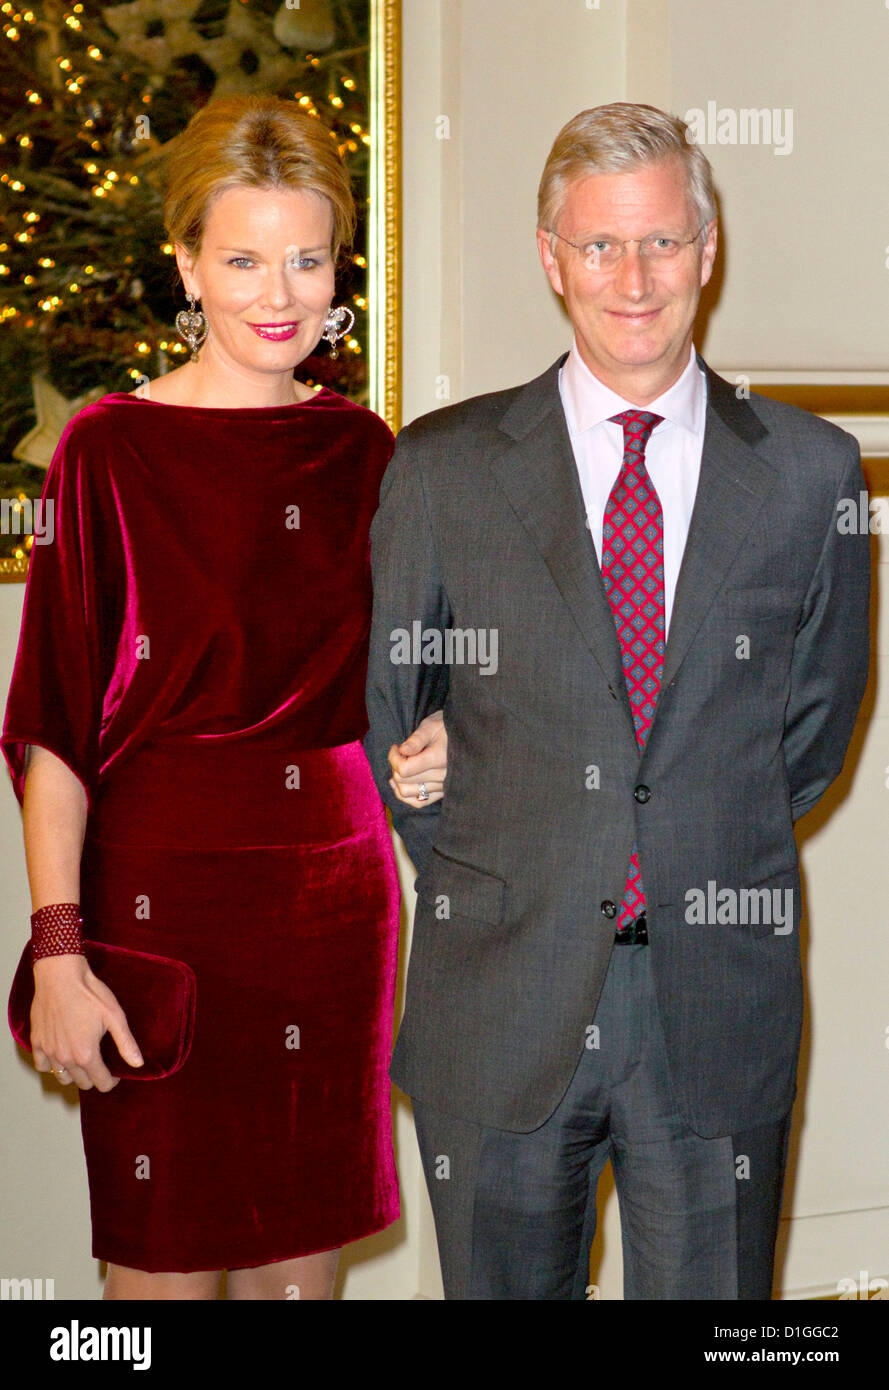 Prinz Philippe und Prinzessin Mathilde von Belgien besuchen das Weihnachtskonzert im königlichen Palast in Brüssel, 19. Dezember 2012. Foto: Patrick van Katwijk / Niederlande und Frankreich, Stockfoto